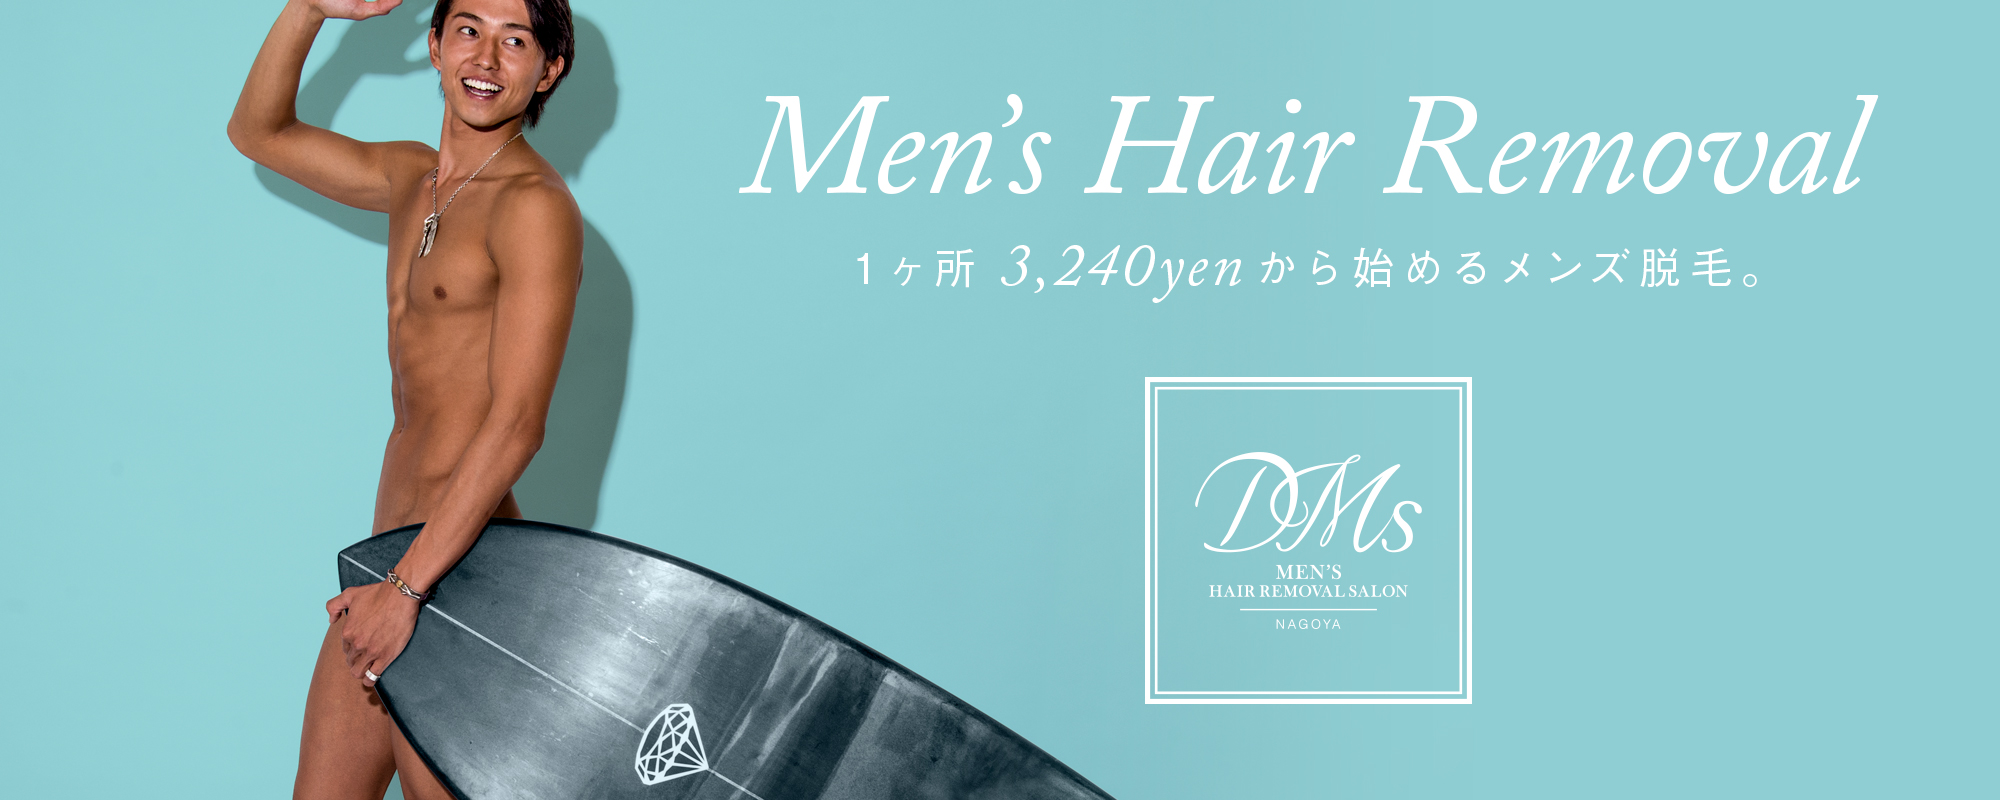 名古屋栄の低価格メンズ脱毛サロン「DMs」